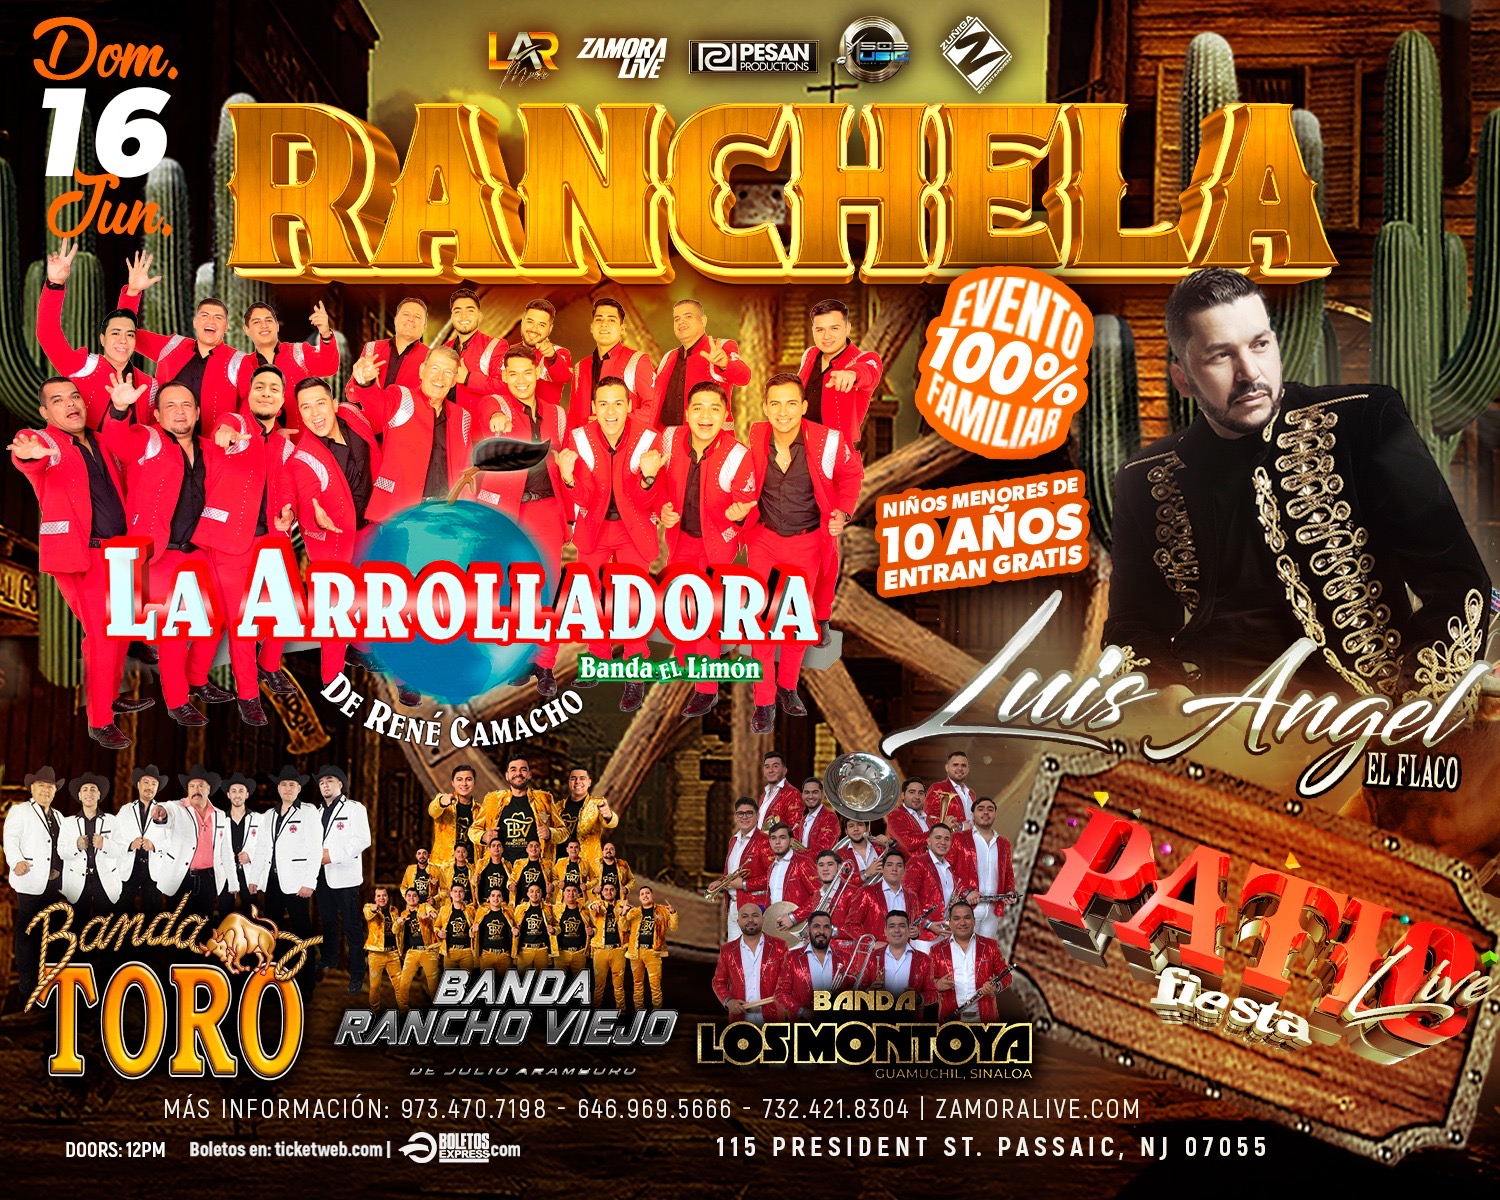 La Arrolladora Banda El Limon • Luis Angel “El Flaco” • Banda Rancho Viejo y más! En Fiesta Night Club (RANCHELA)